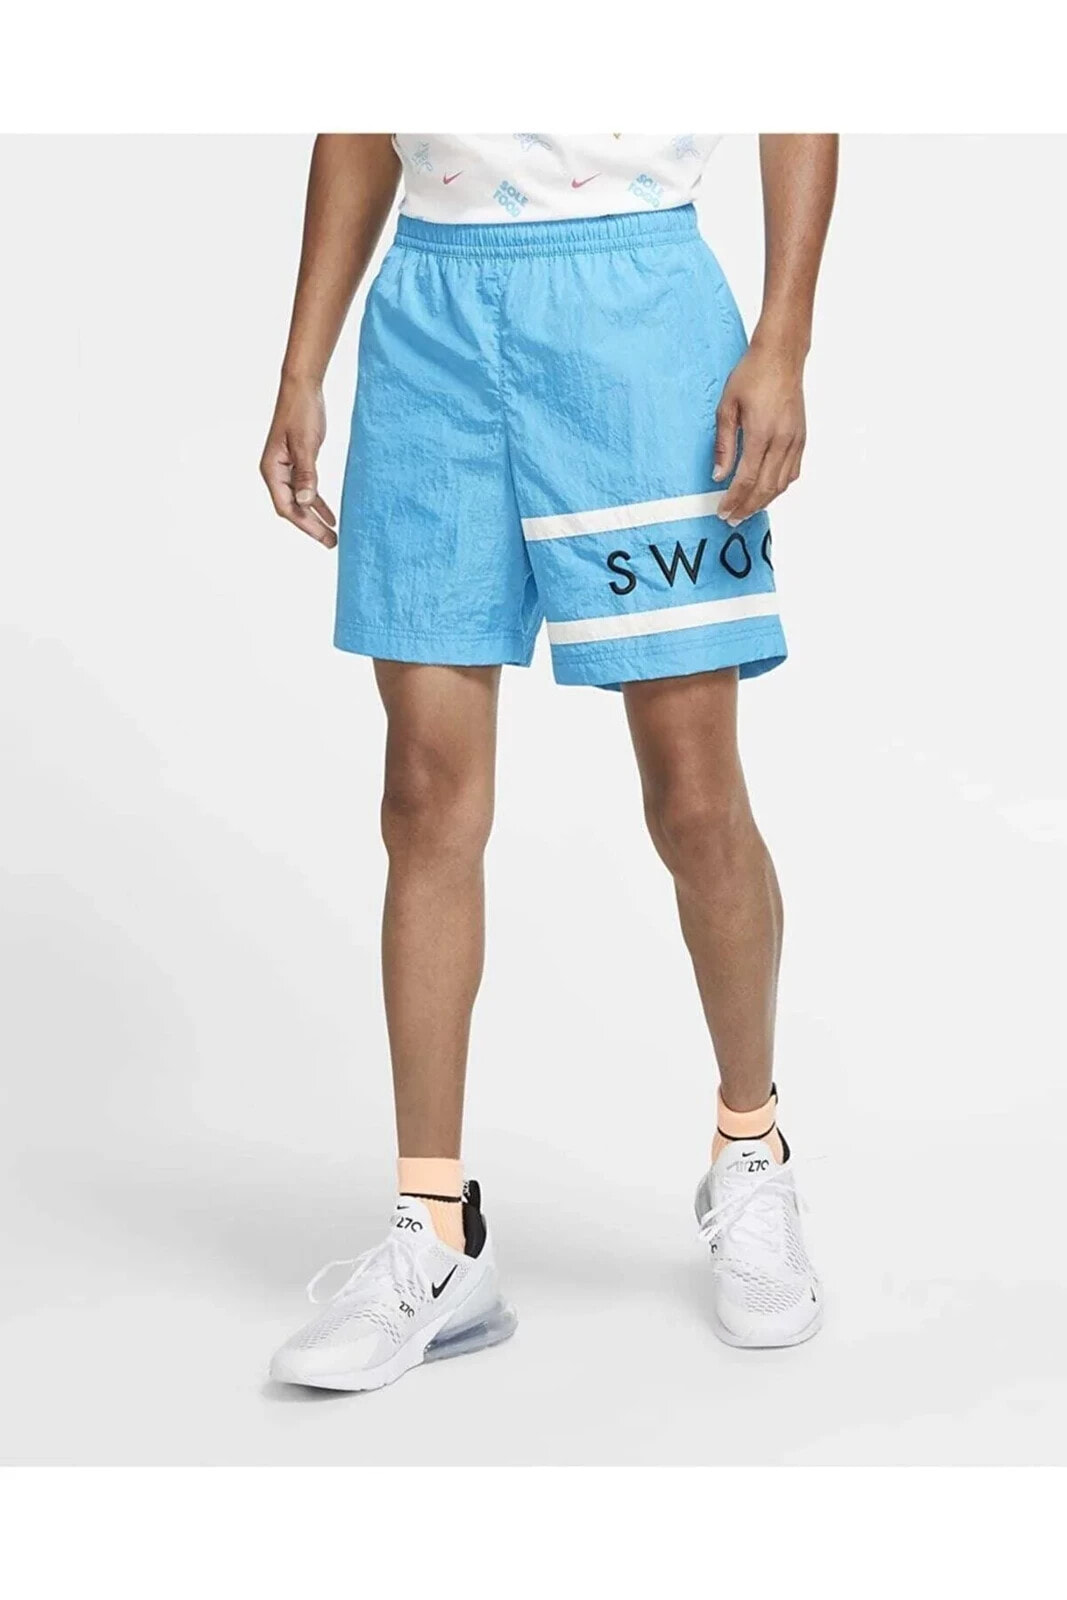 Sporstwear Men's Swoosh Şort Günlük Kullanım Ve Havuz Şortu